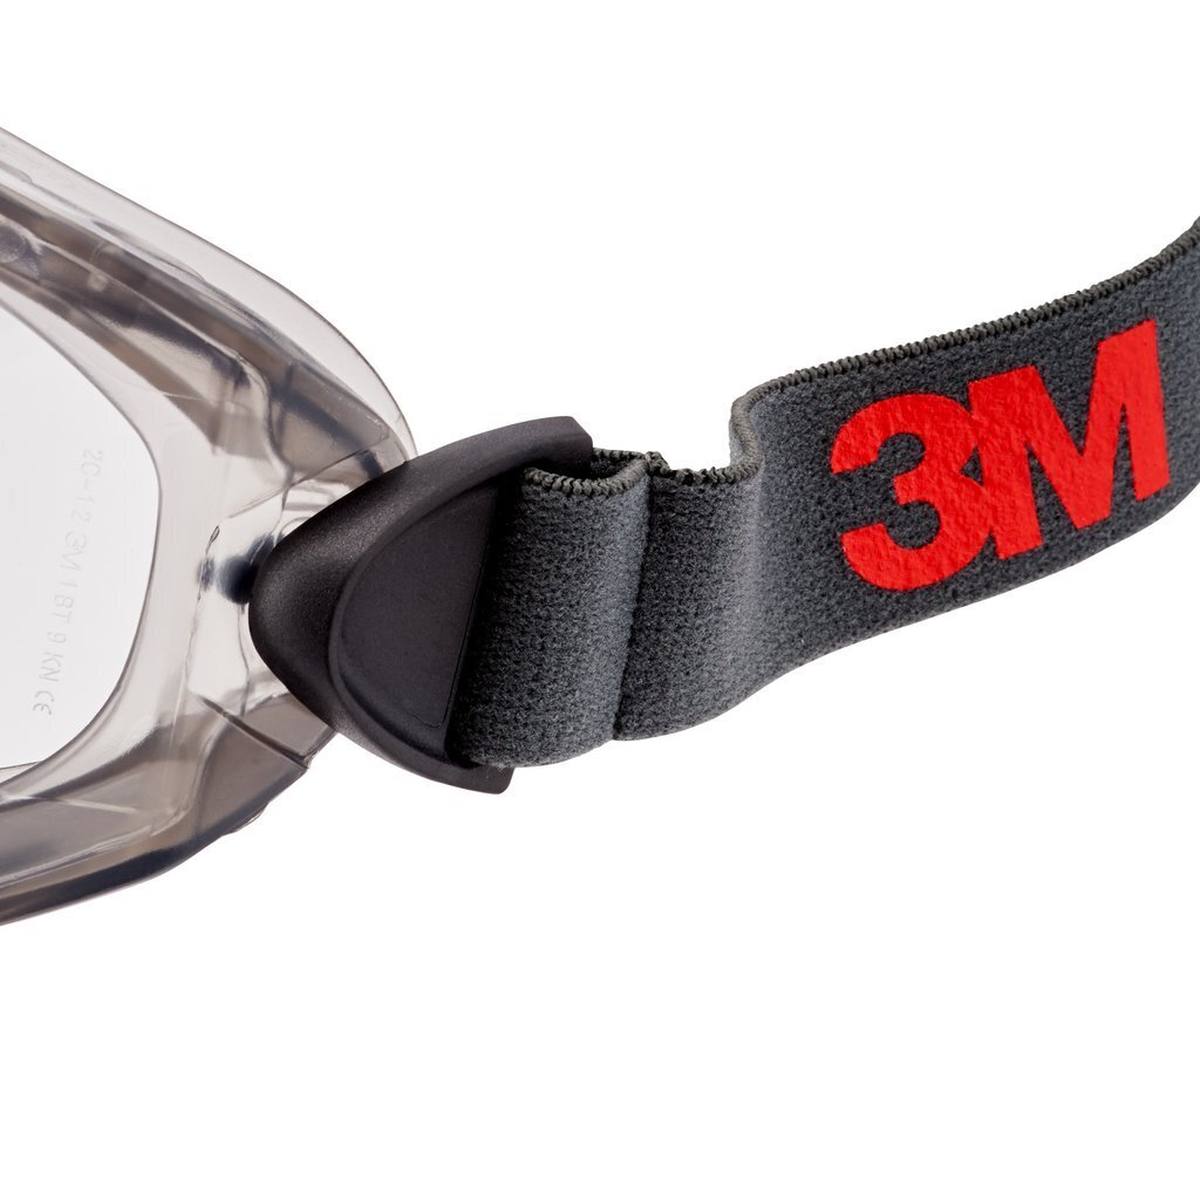 3M 2891-SGAF Gafas de visión total, con ranura de ventilación, bisagras ajustables, revestimiento antivaho